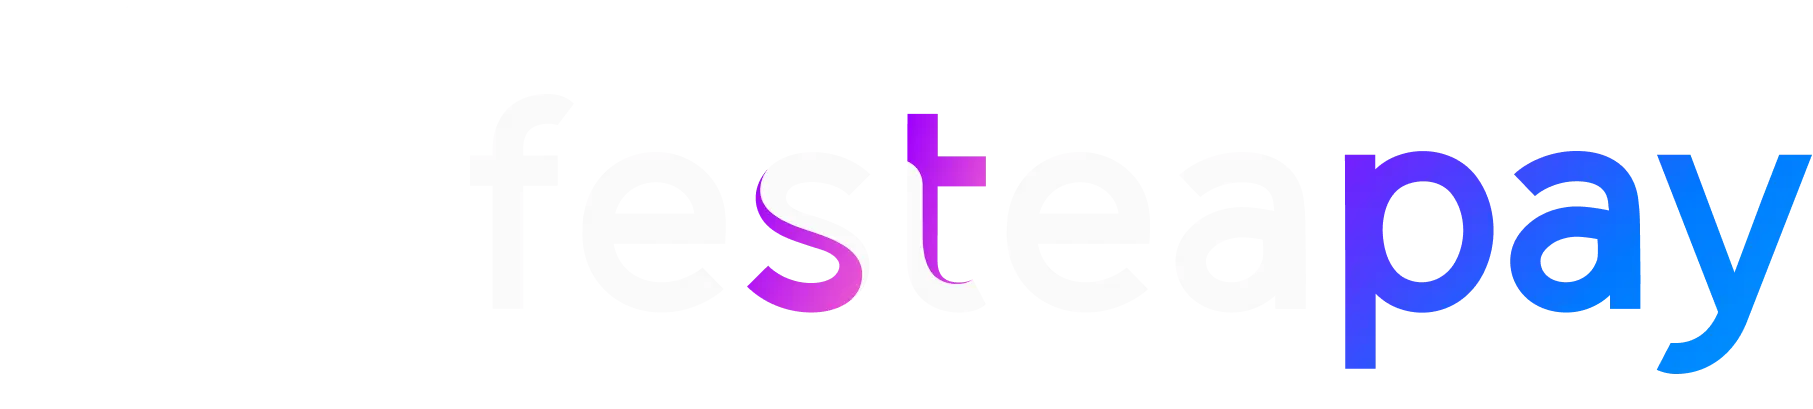 Festea Logo